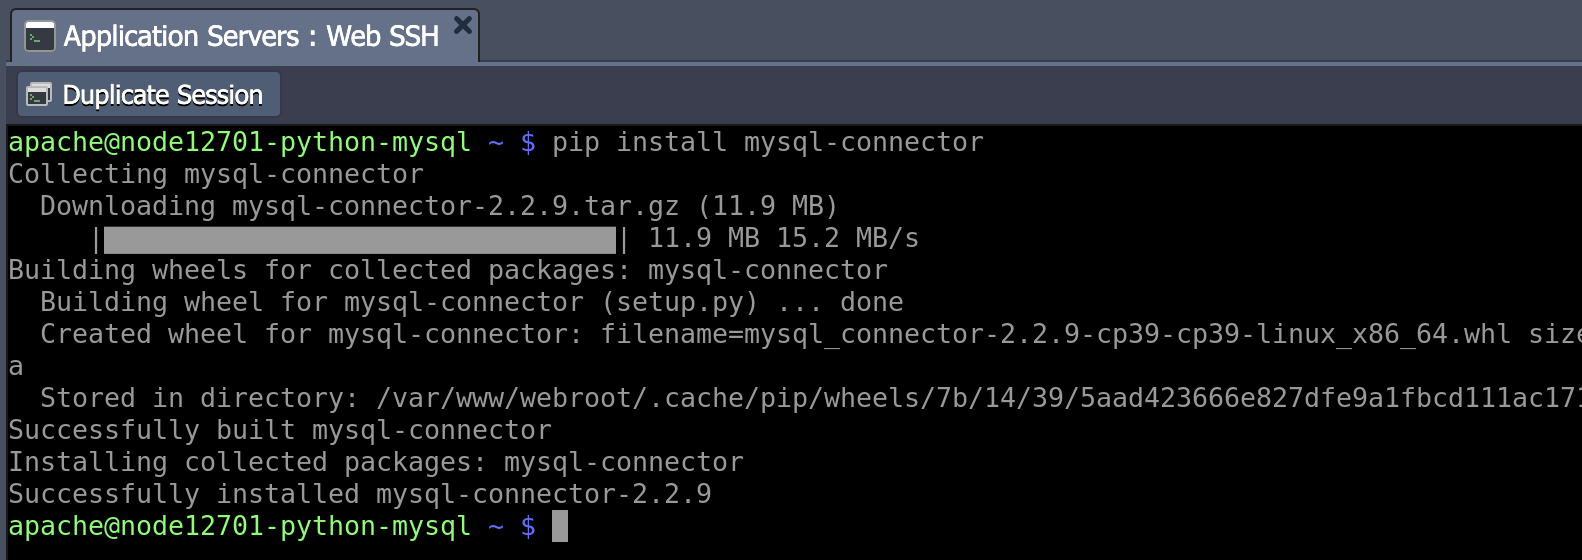 การเชื่อมต่อ Mysql/Mariadb สำหรับ Python แอปพลิเคชัน - คู่มือการใช้งาน  Ruk-Com Cloud (Paas)